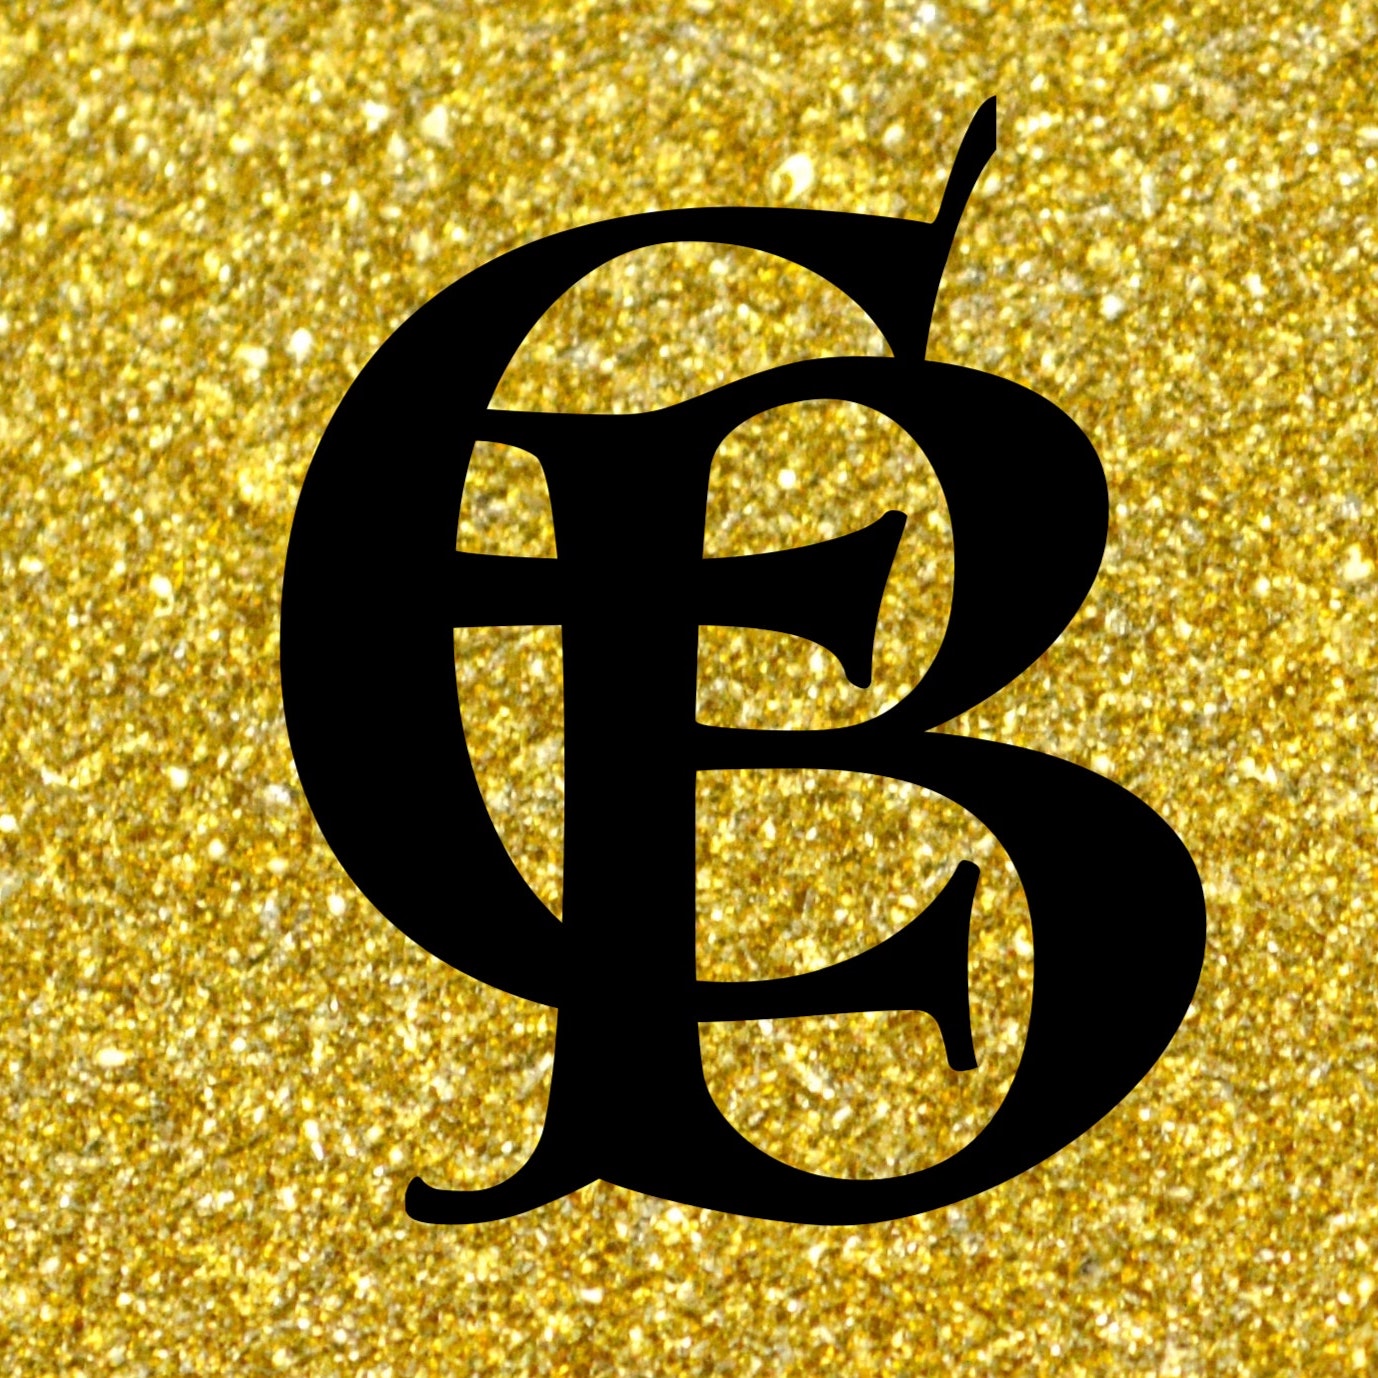 Eyerusalem's logo